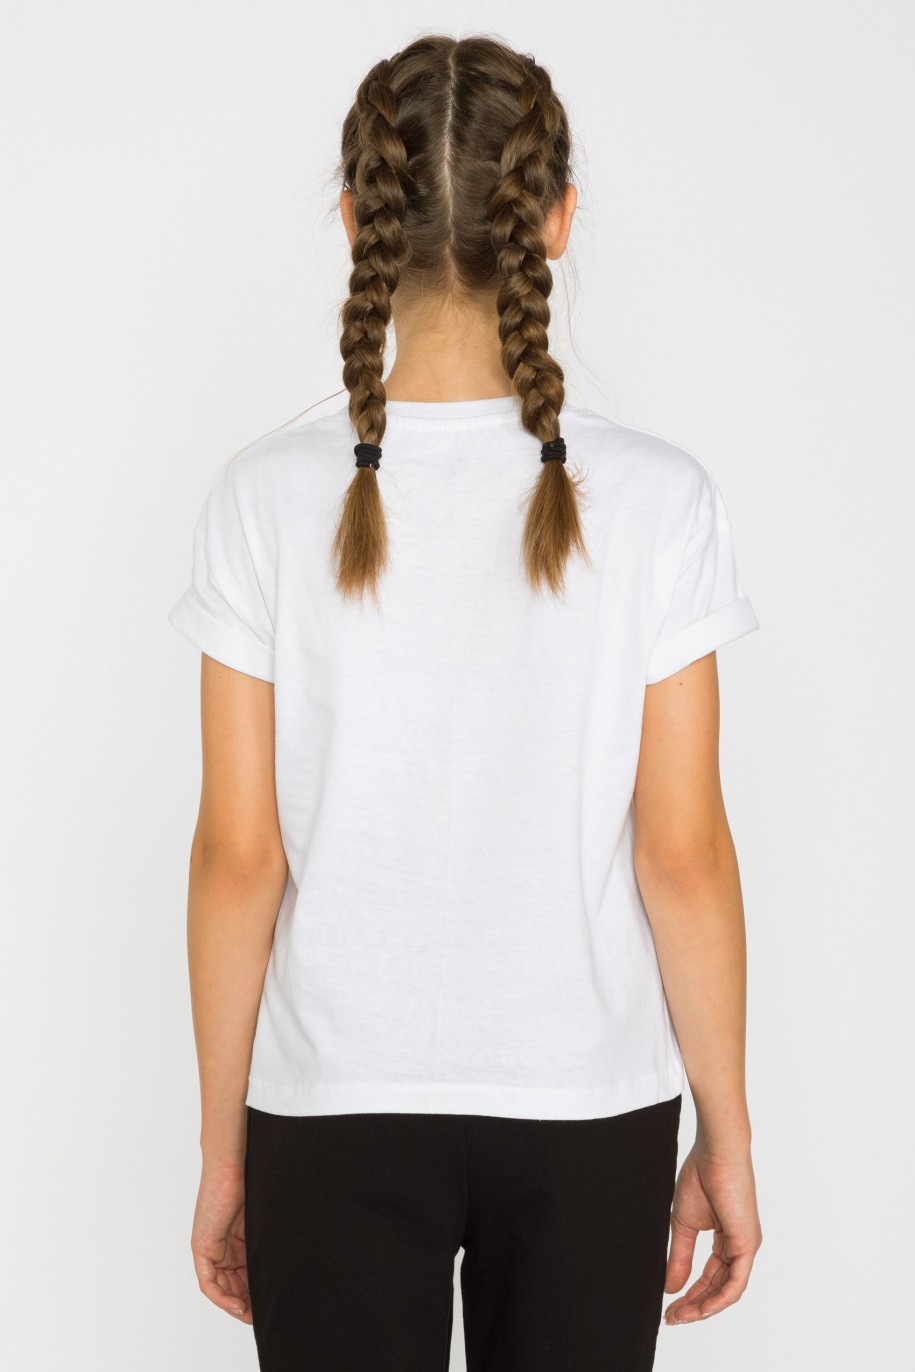 Biały t-shirt dla dziewczyny bez nadruku - 29364